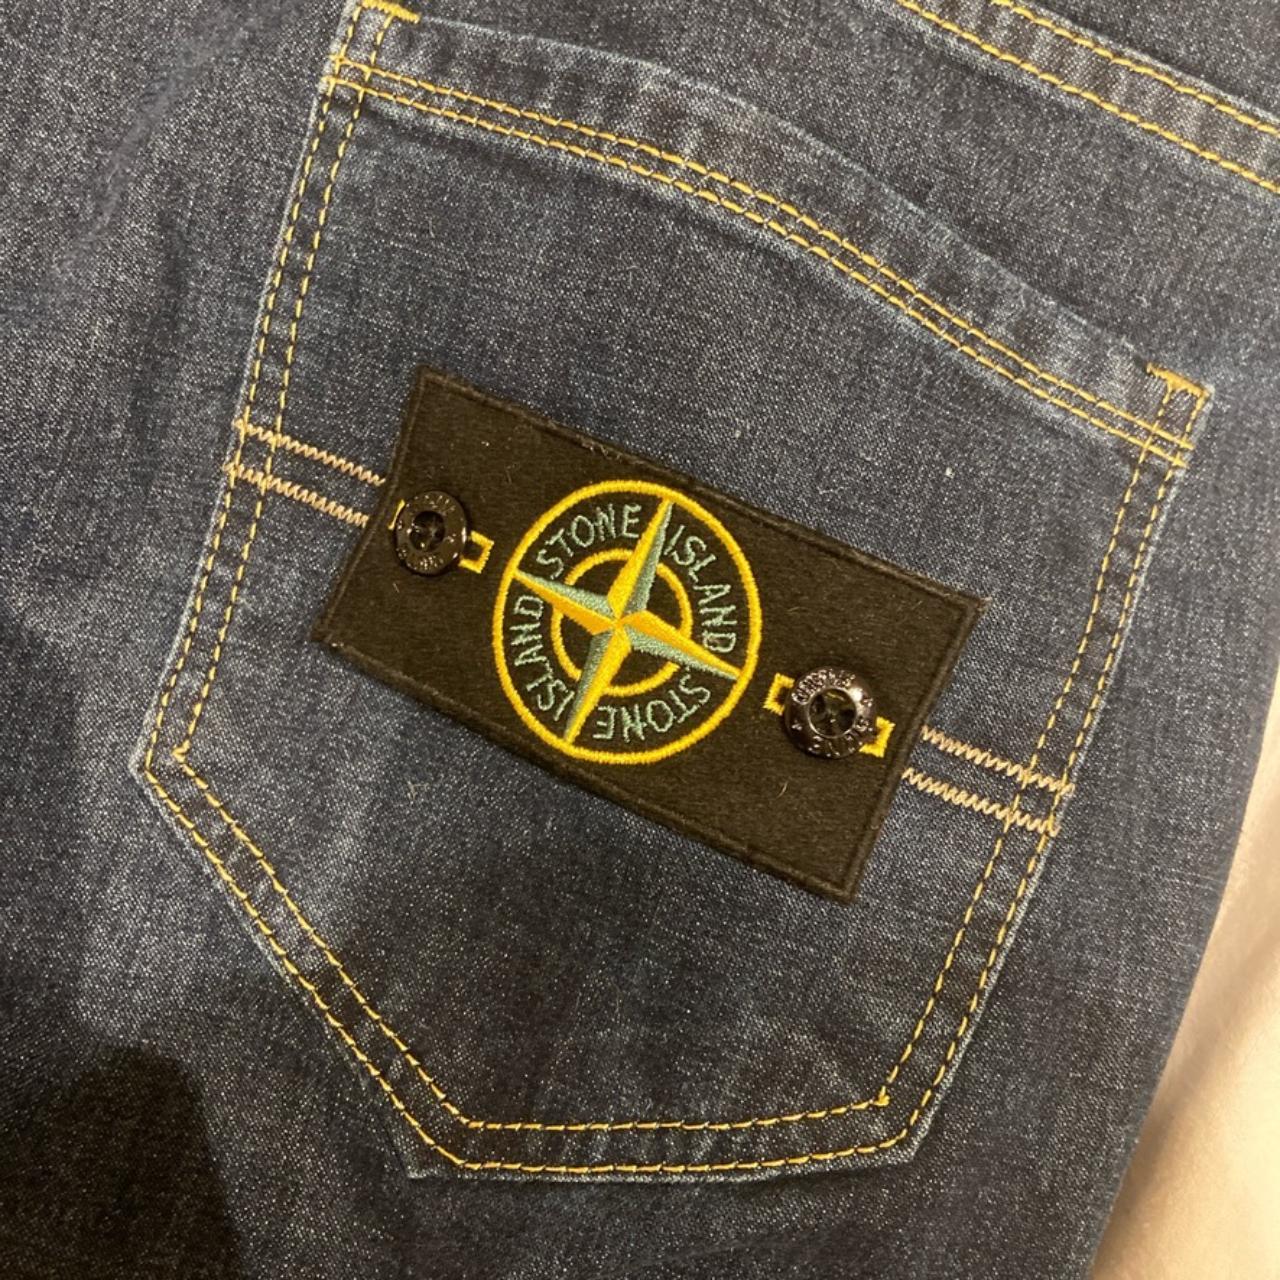 stone island jeans logo badge on back pocket baggy... - Depop